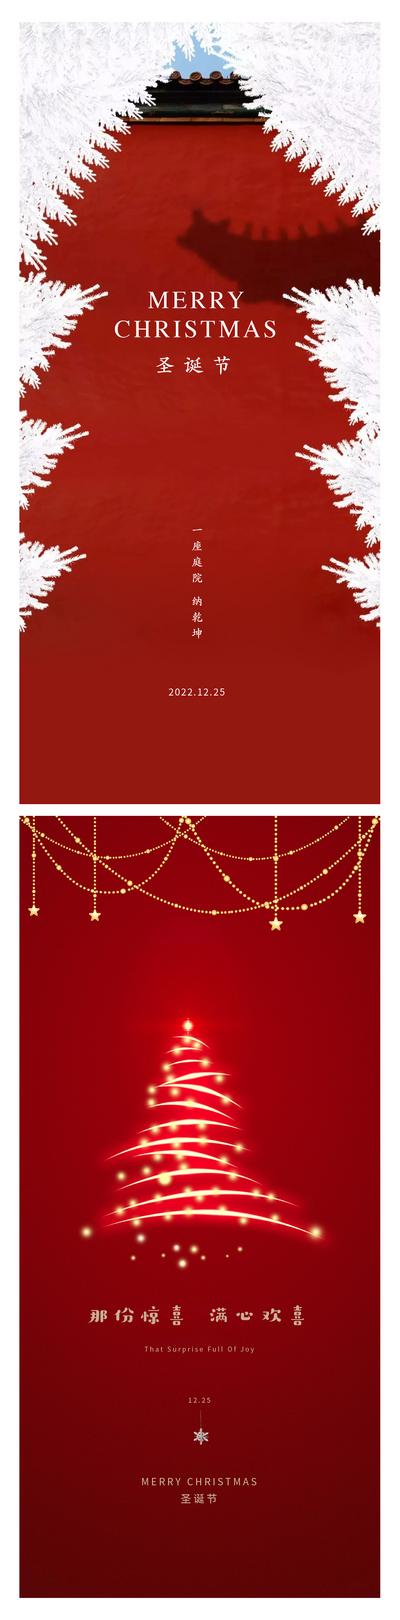 南门网 广告 海报 节日 圣诞节 圣诞树 绘画 光 简洁 红色 宫墙